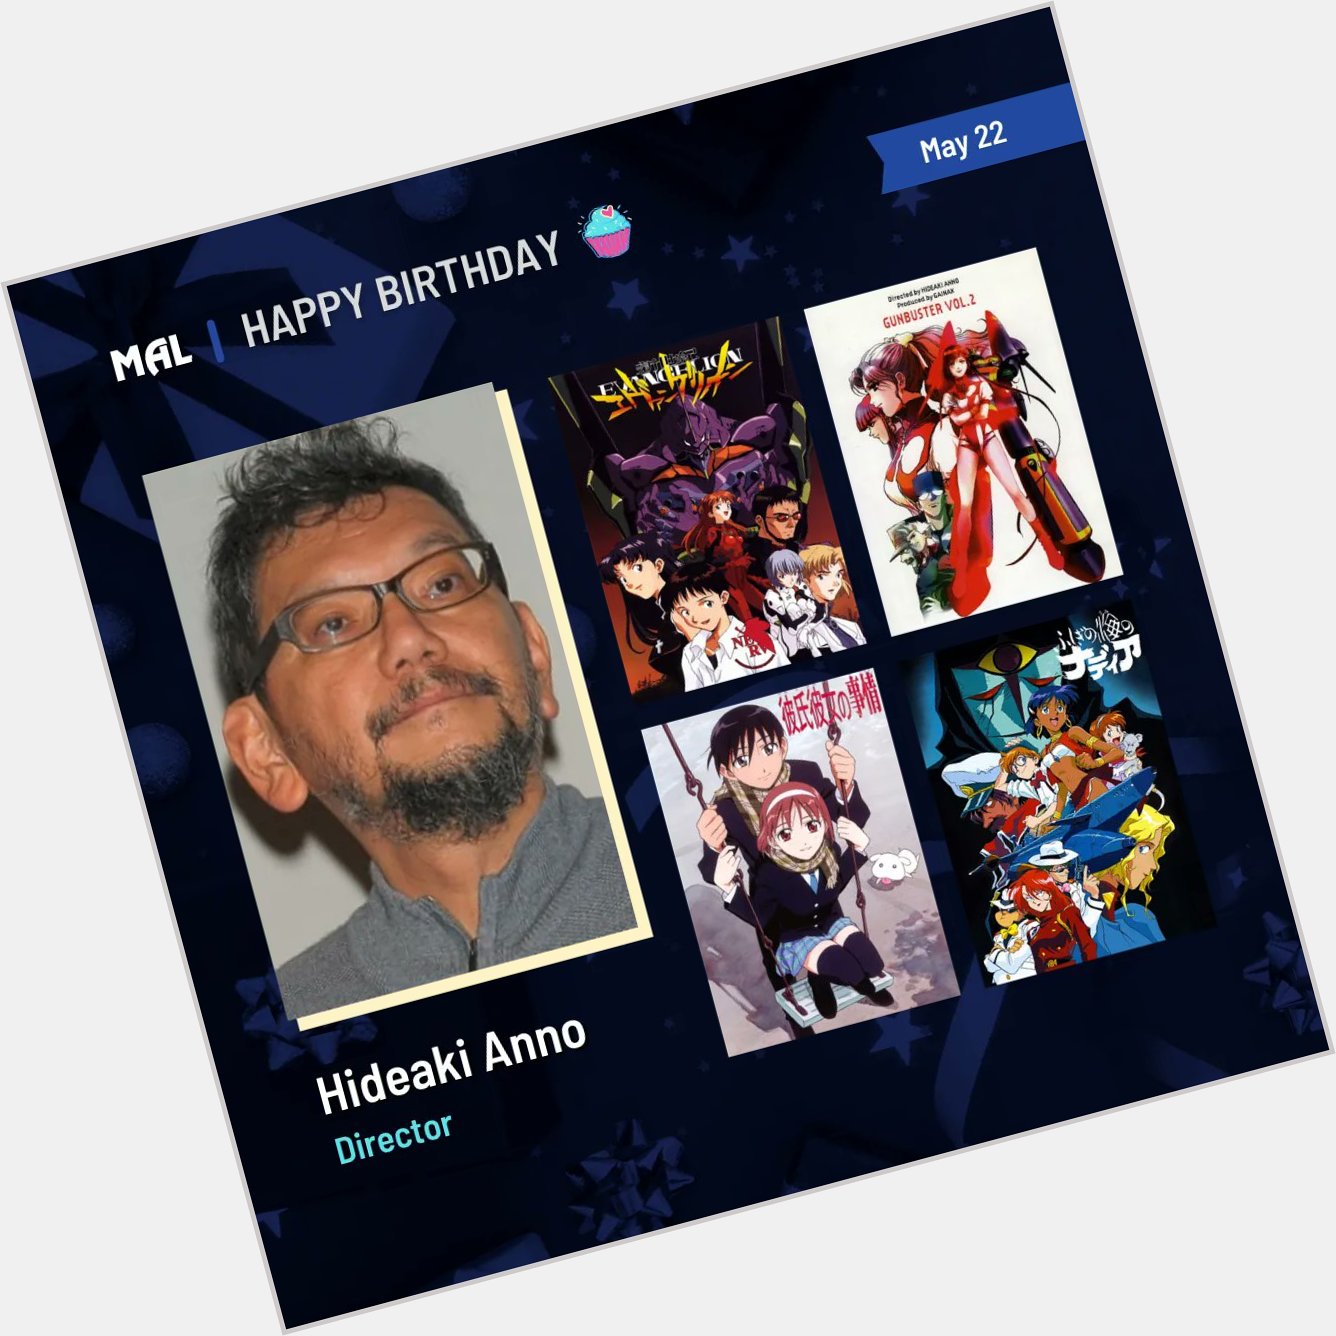 Happy Birthday to Hideaki Anno! Full profile:  